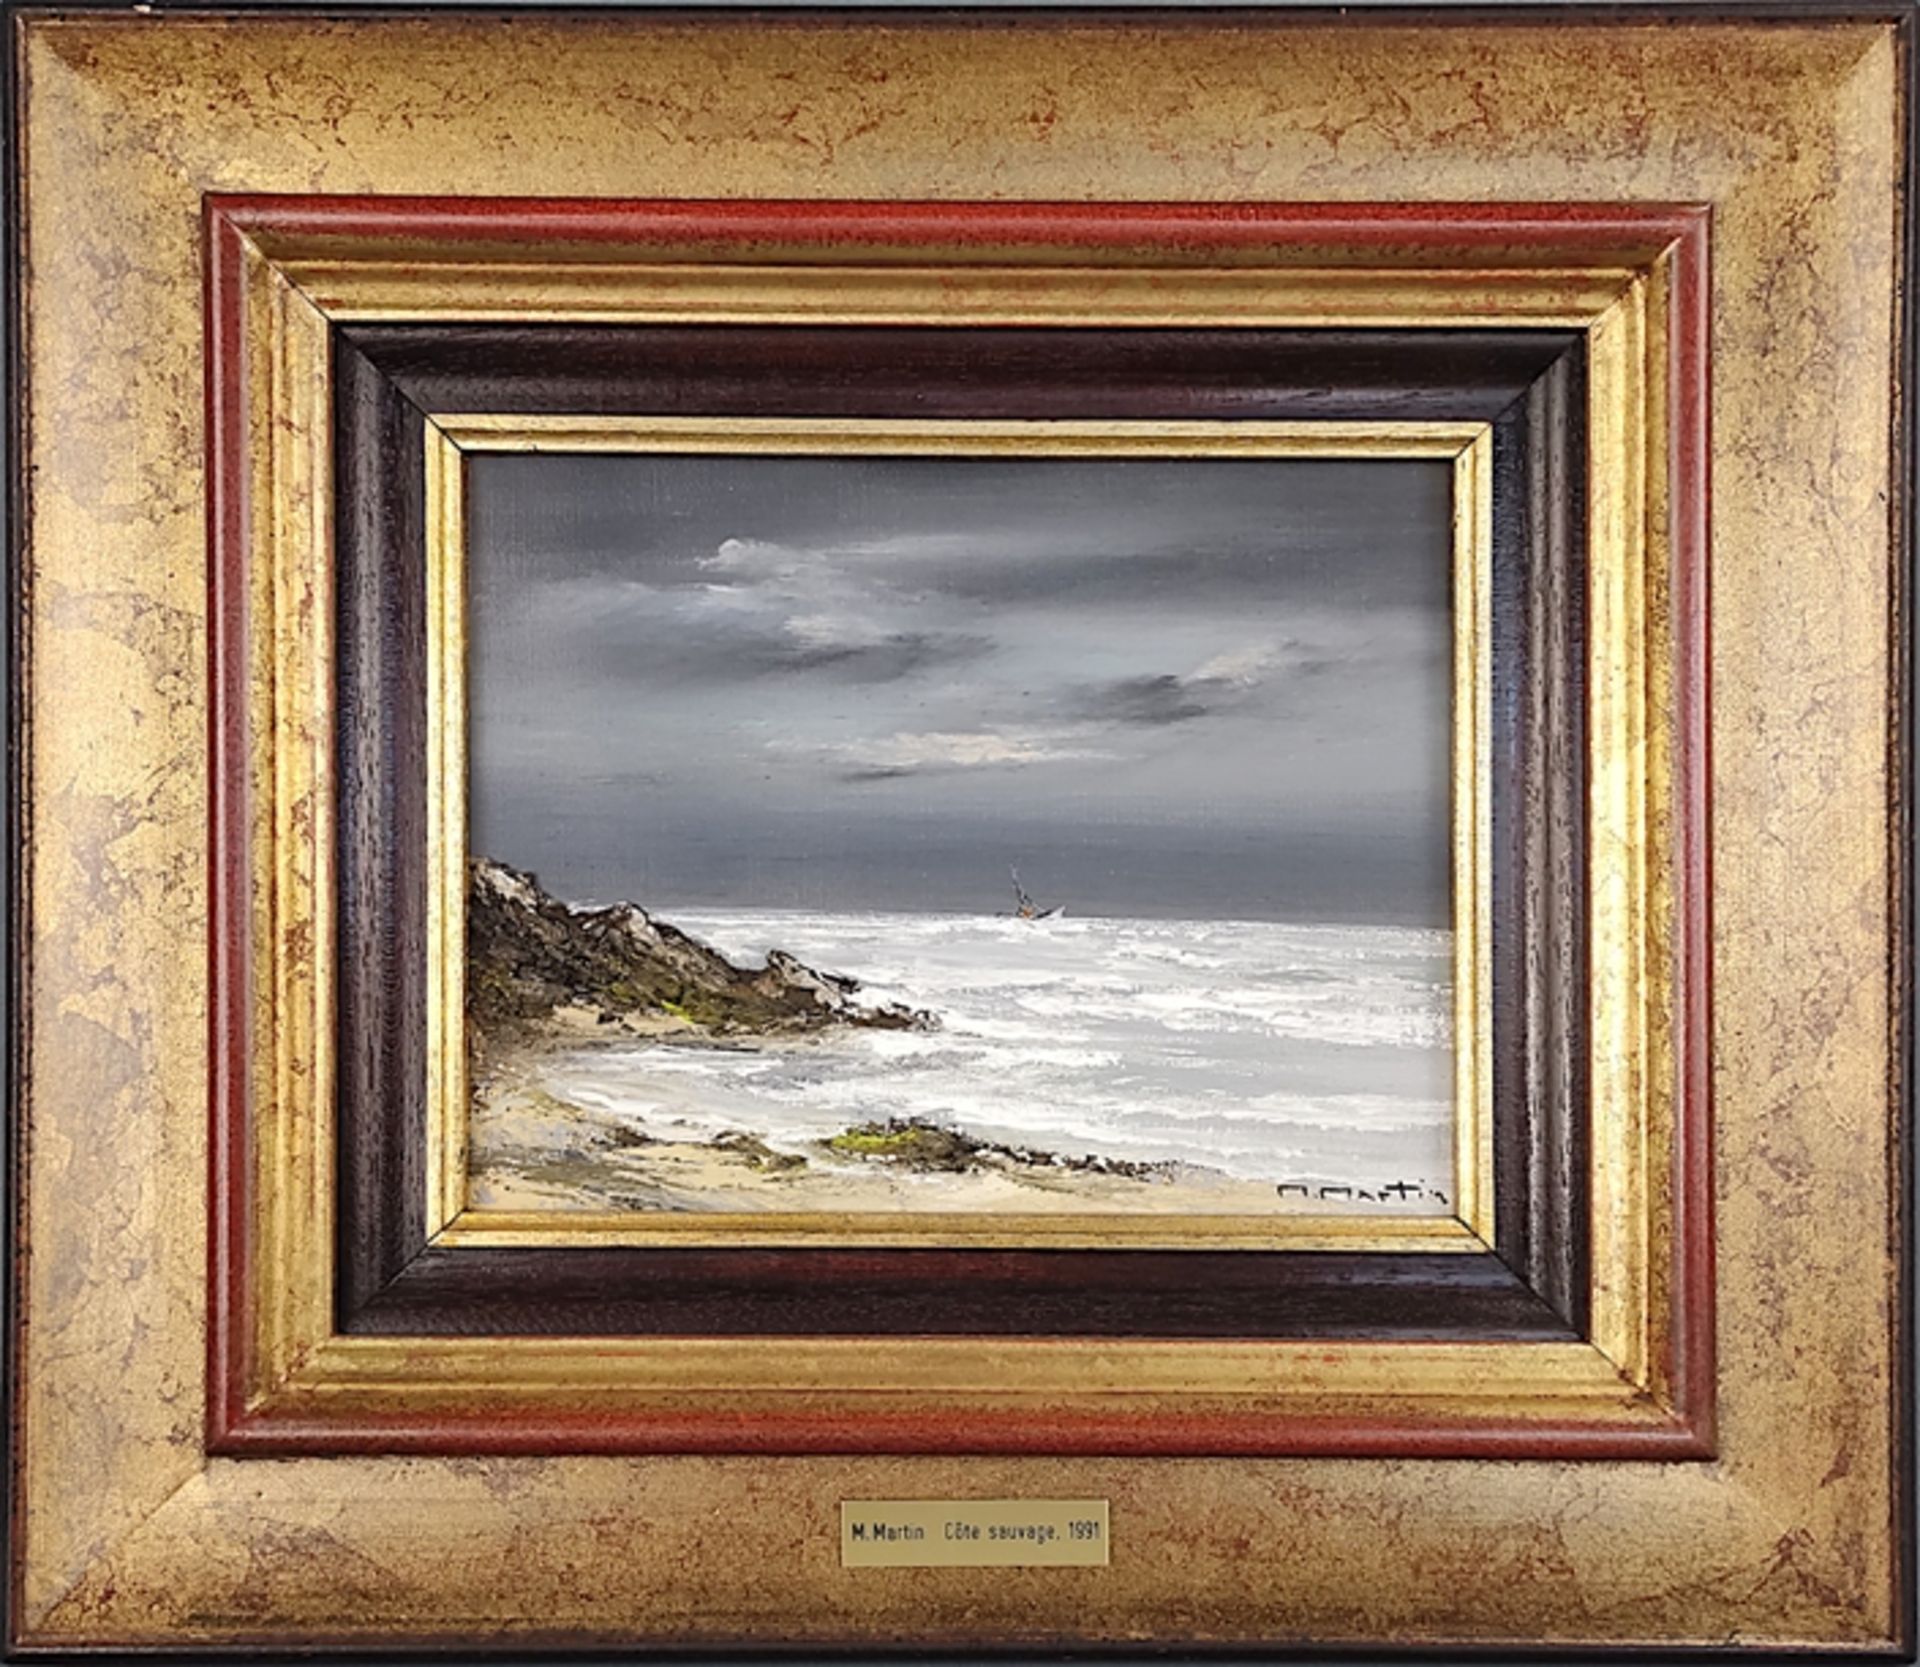 Martin, M. (20. Jahrhundert) "Côte Sauvage", aufgewühltes Meer bei Gewitterstimmung, Öl auf Leinwan - Bild 2 aus 4